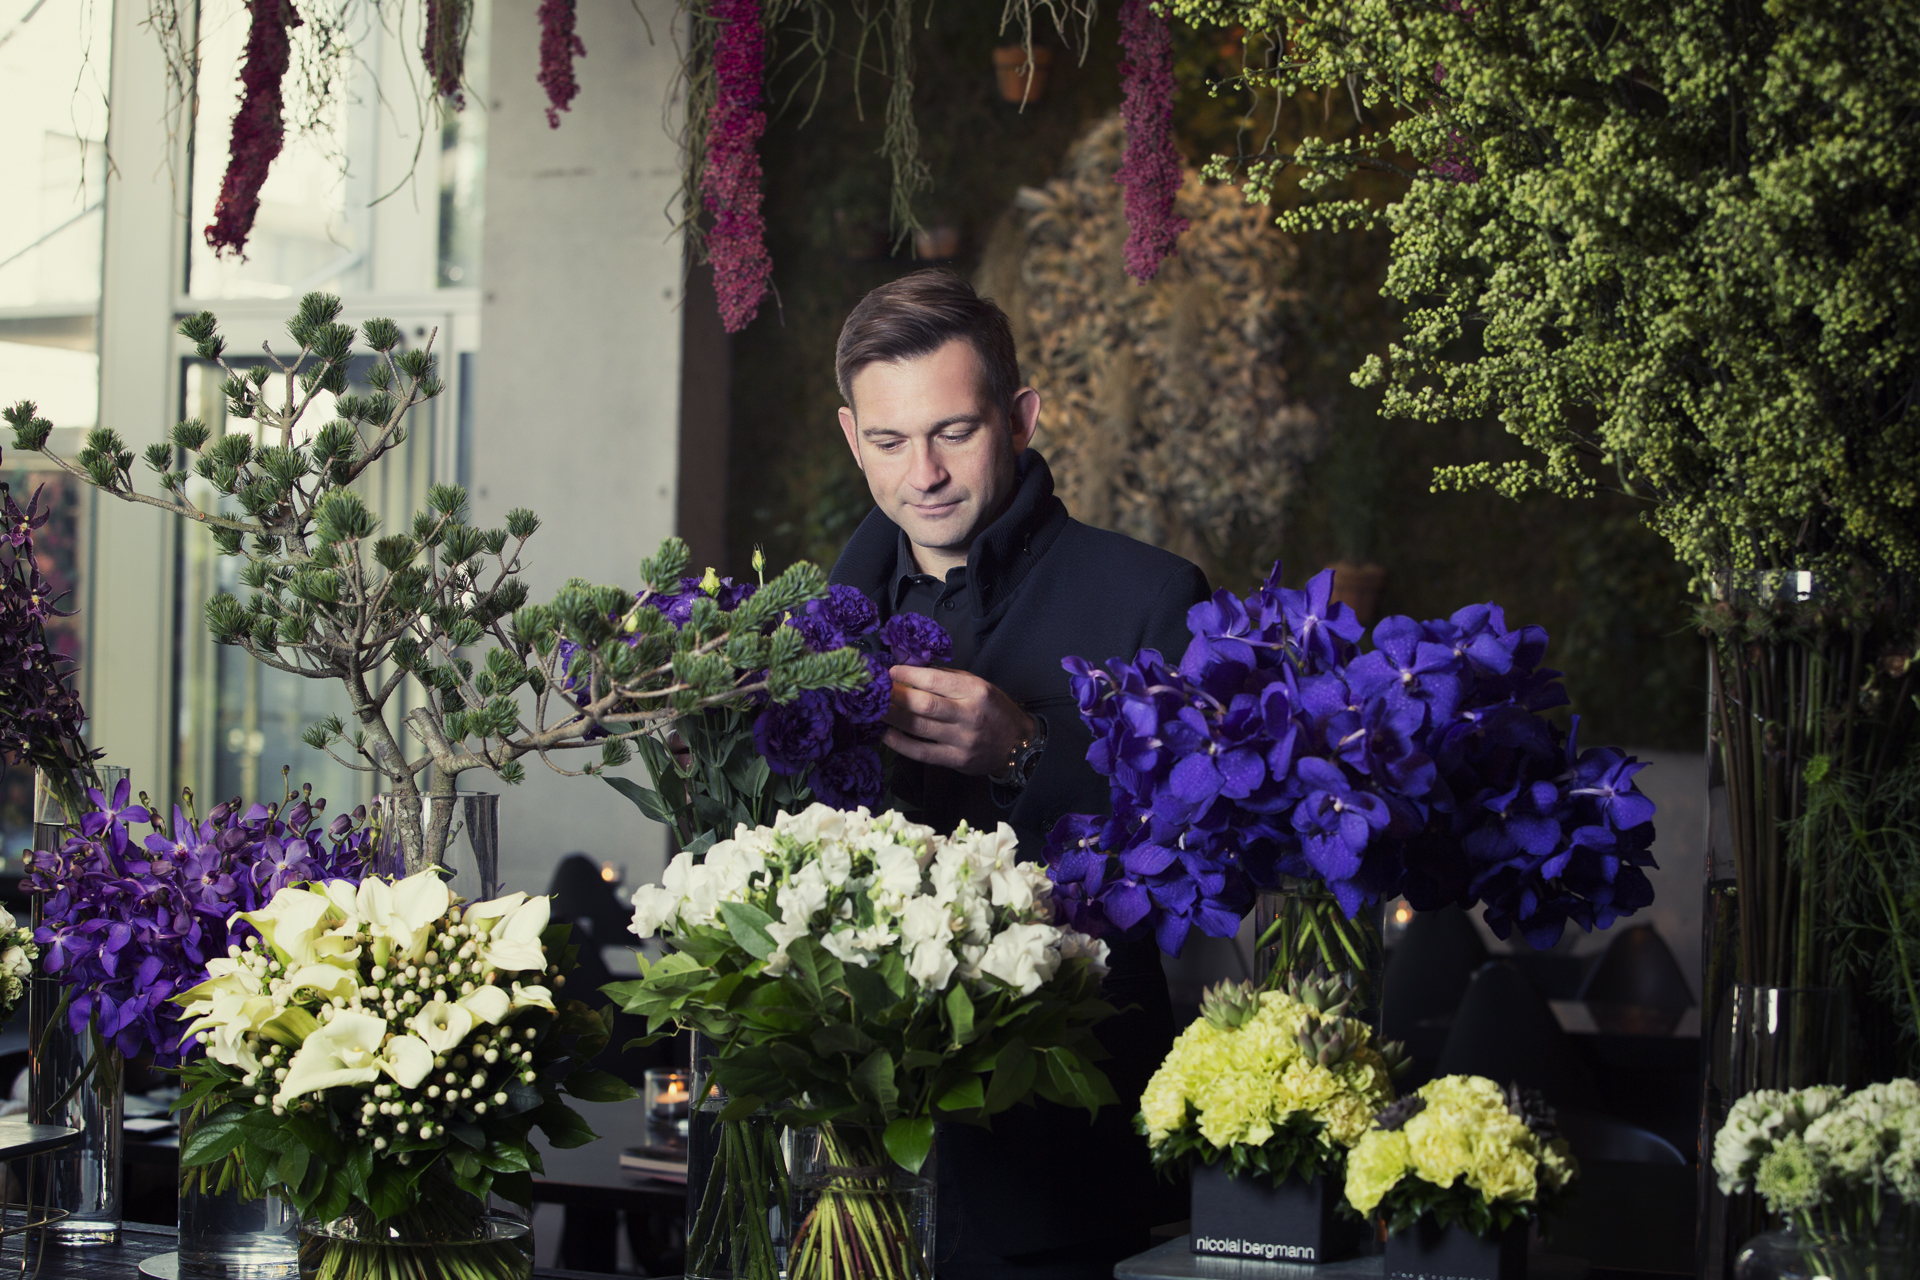 ニコライ バーグマン Nicolai Bergmann 北欧と和の融合が生んだベストセラー フラワーボックス 太宰府天満宮で日本人が愛する花見の未来をテーマにした展覧会を開催